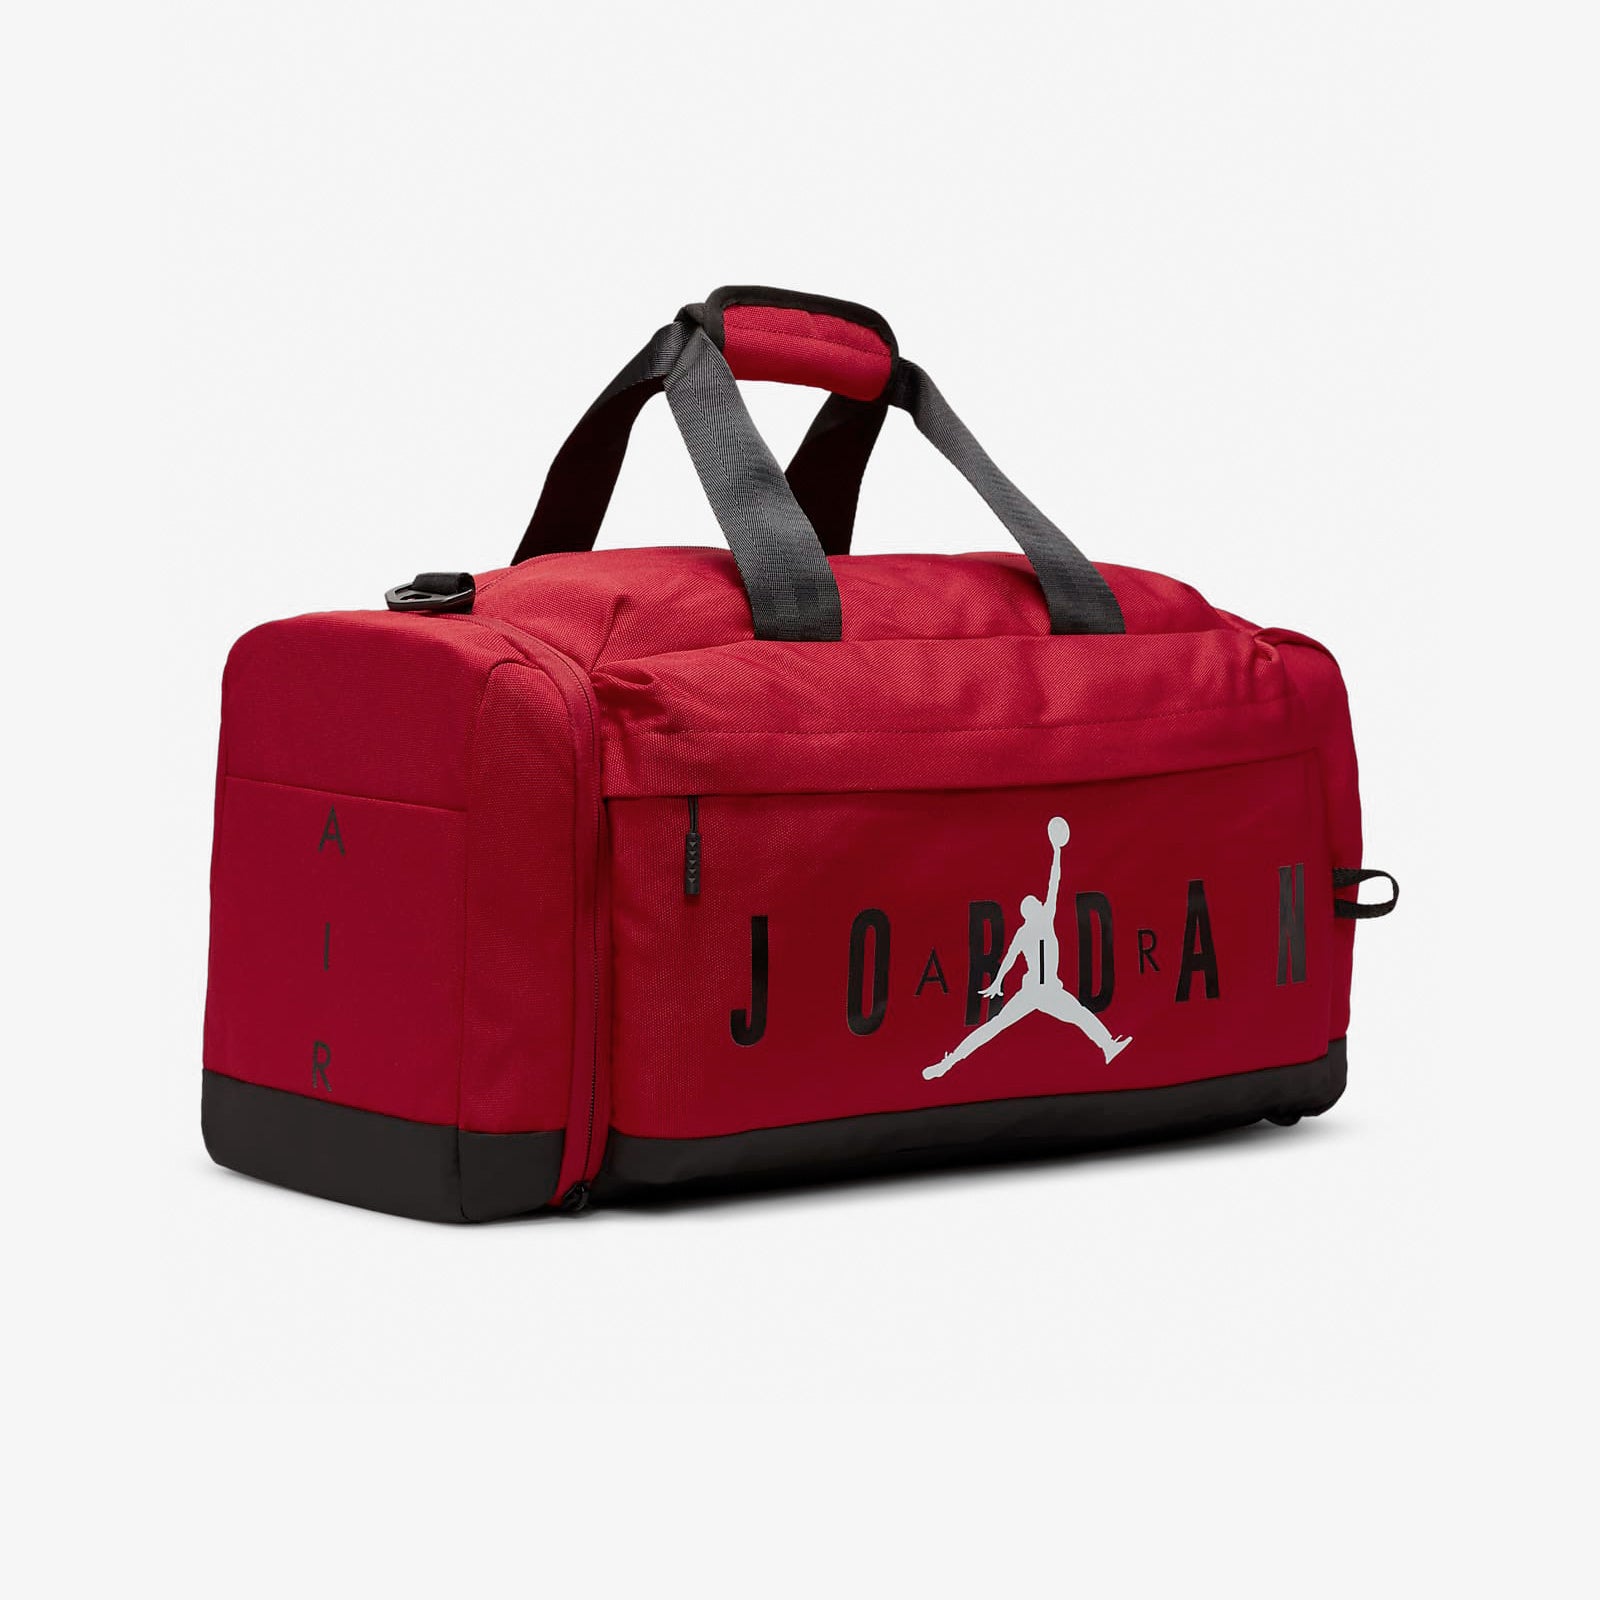 Air Jordan Duffle - Red - Throwback